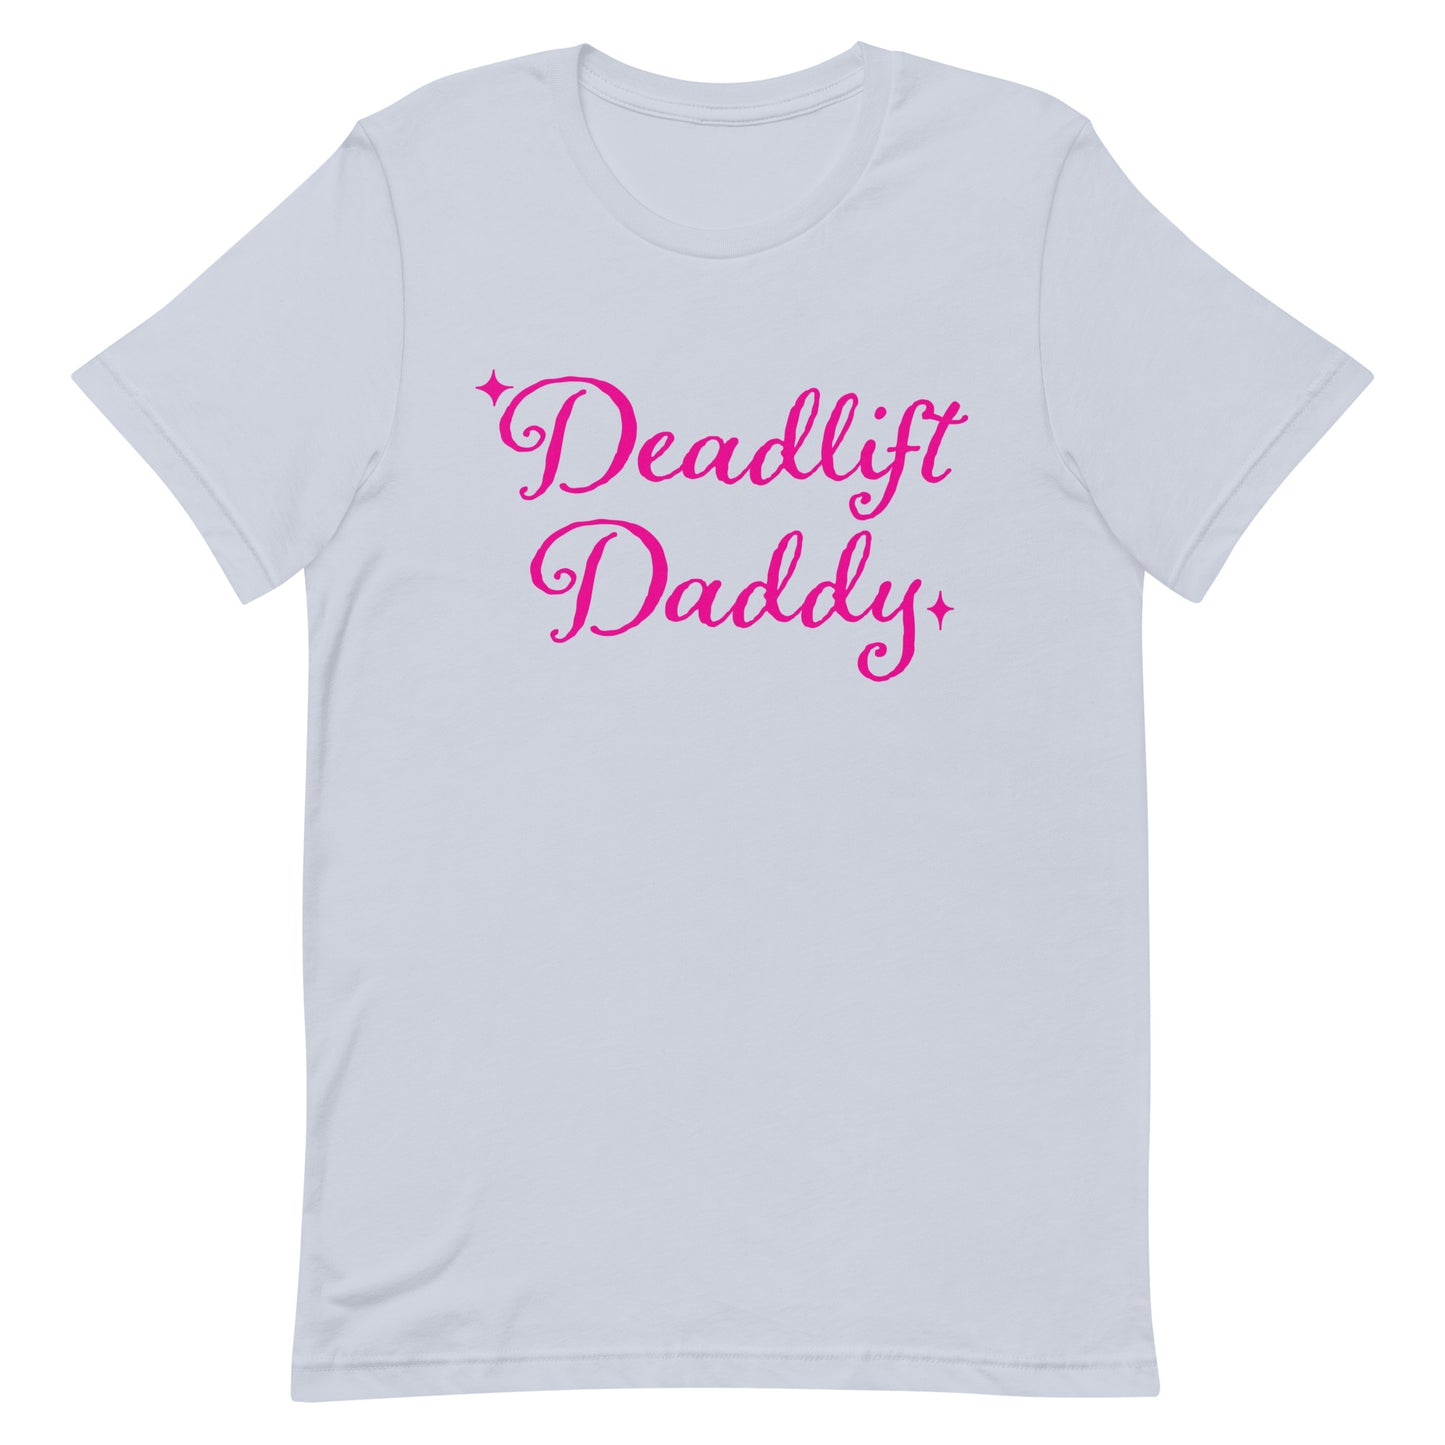 Deadlift Daddy Unisex t-shirt